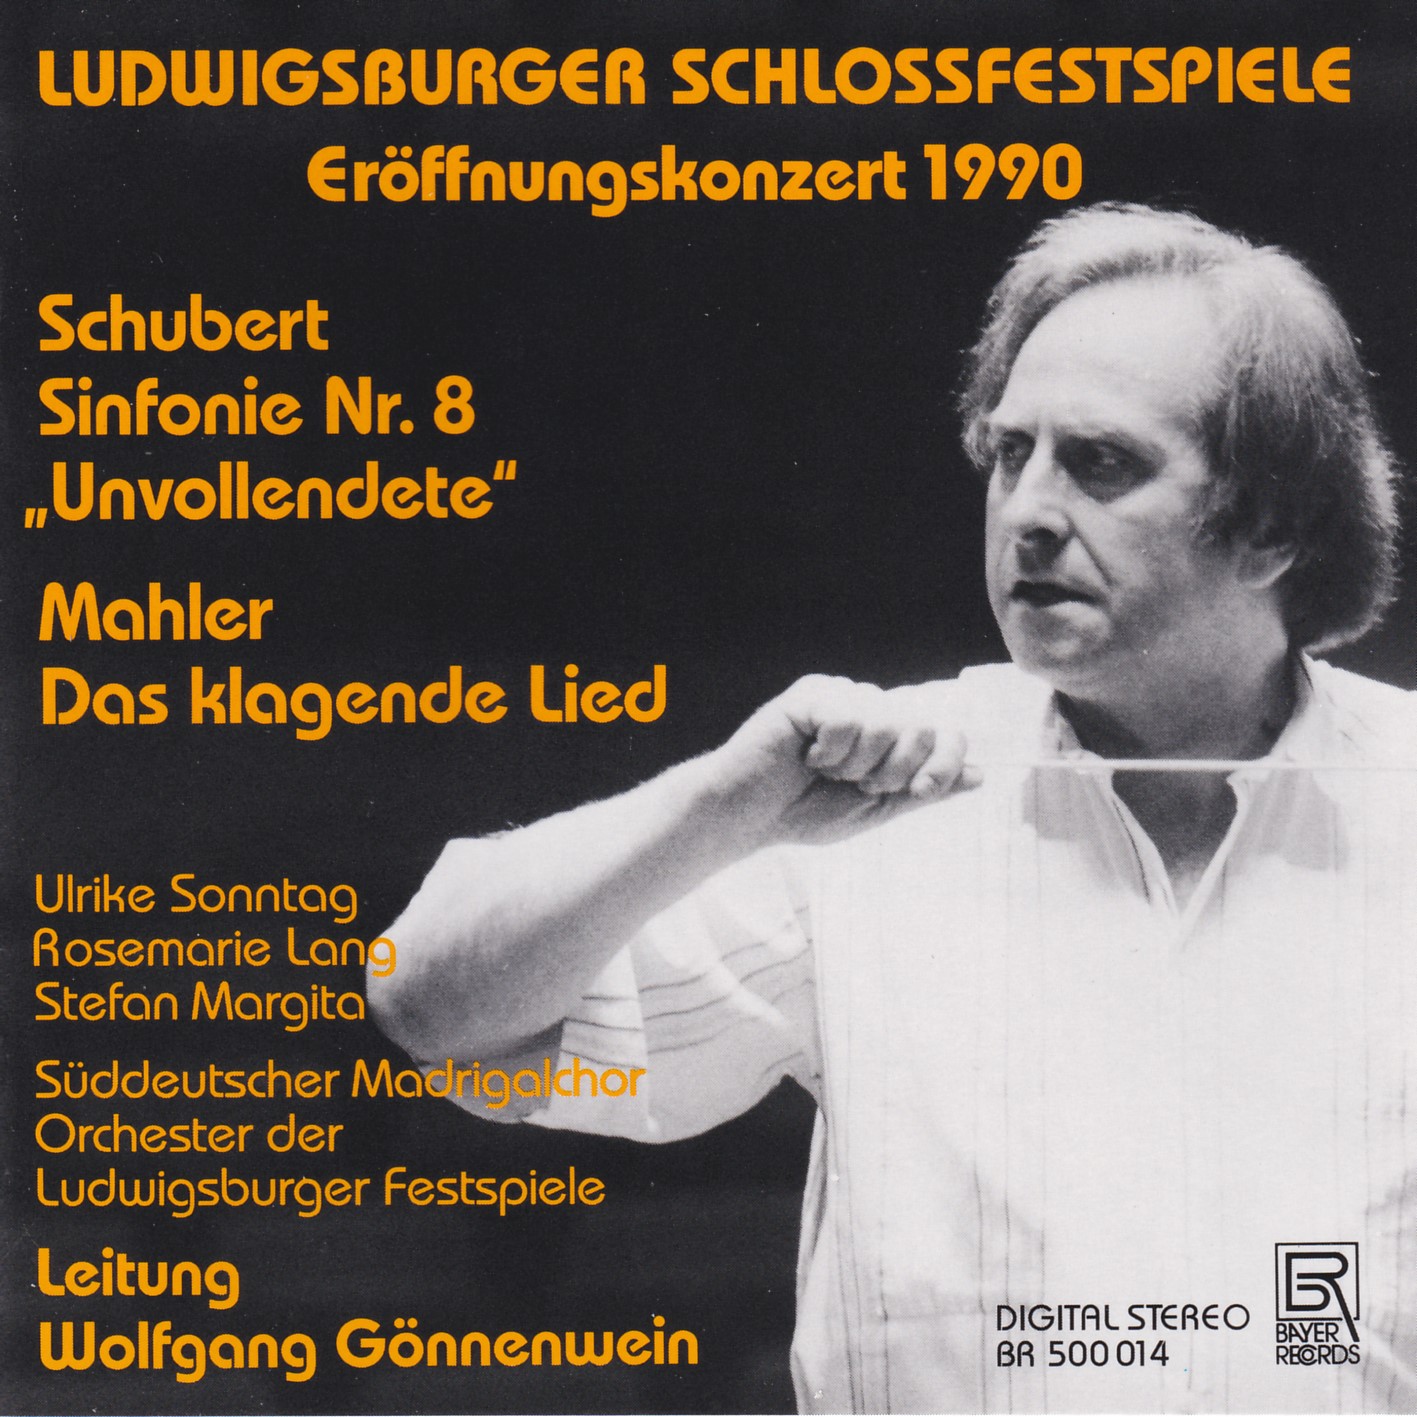 Schubert - Unvollendete / Mahler - Das klagende Lied